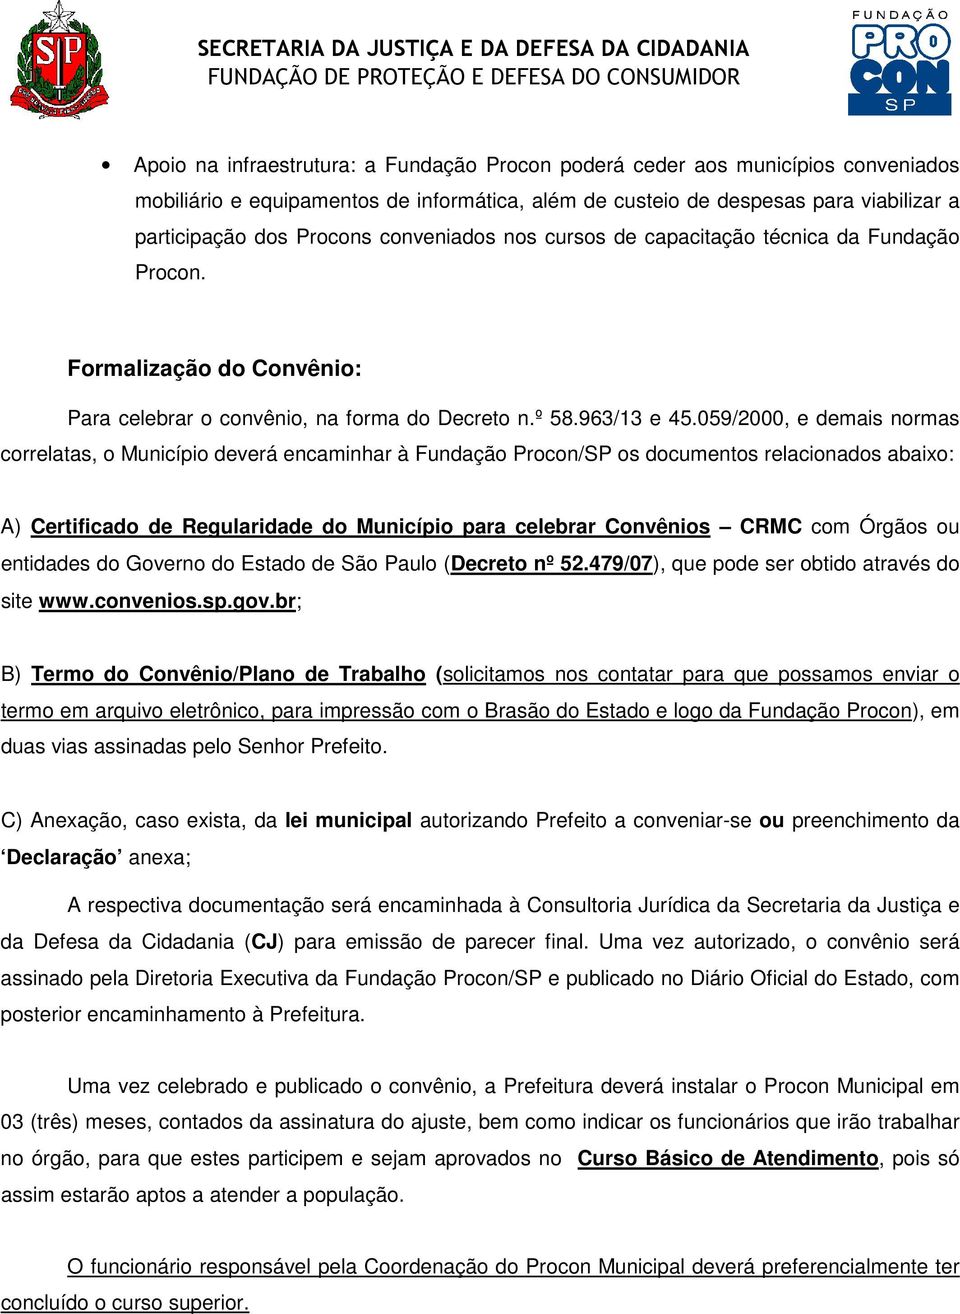 059/2000, e demais normas correlatas, o Município deverá encaminhar à Fundação Procon/SP os documentos relacionados abaixo: A) Certificado de Regularidade do Município para celebrar Convênios CRMC